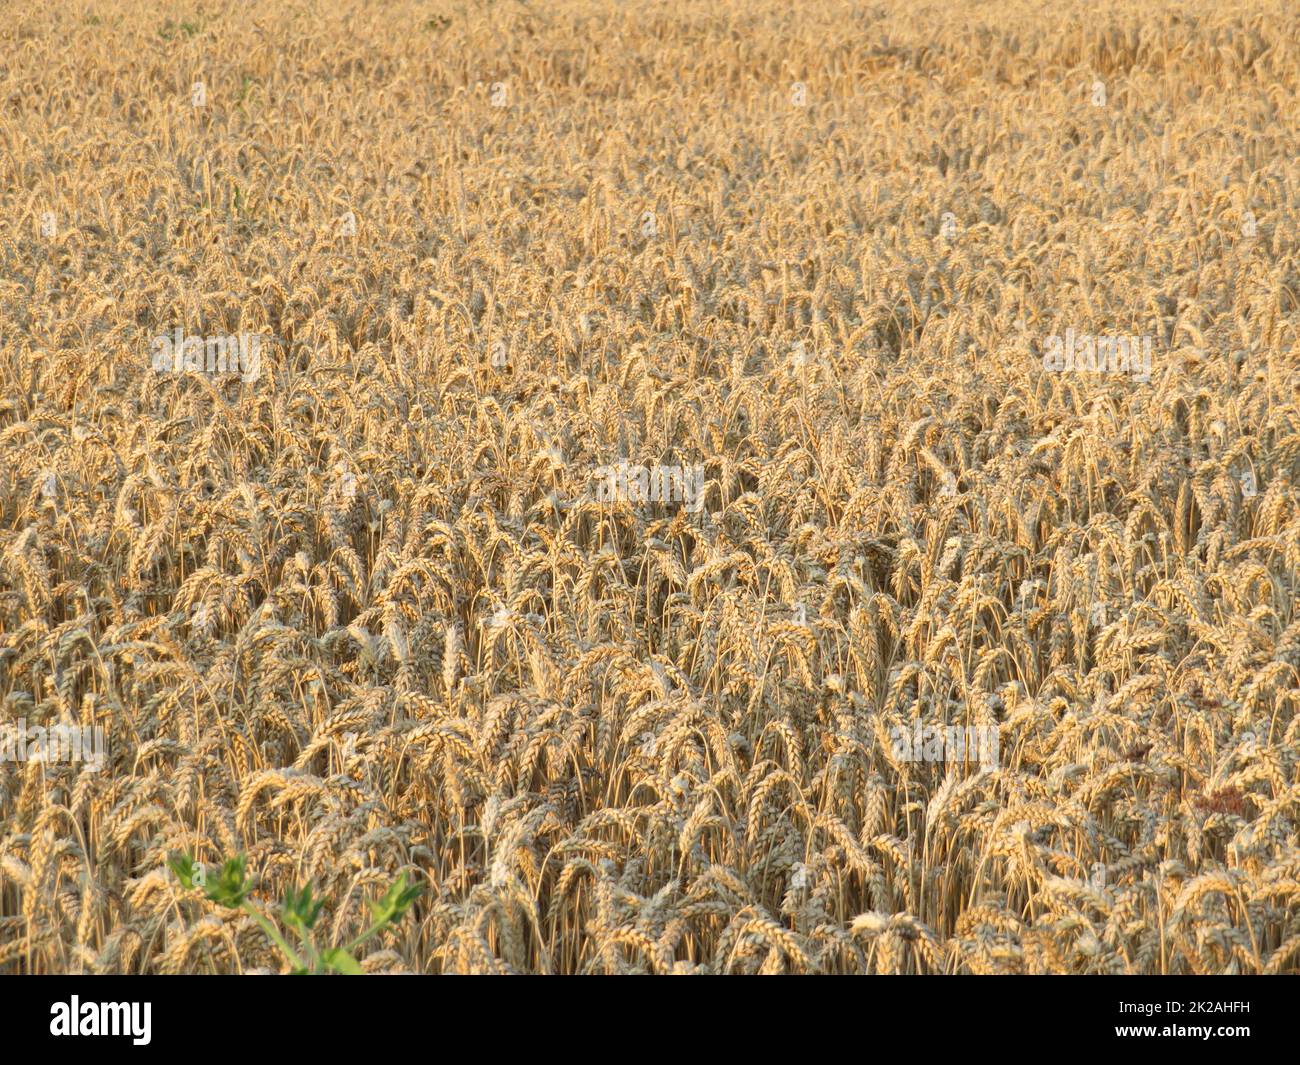 magnifique champ de céréales sèches prêt à récolter des aliments Banque D'Images